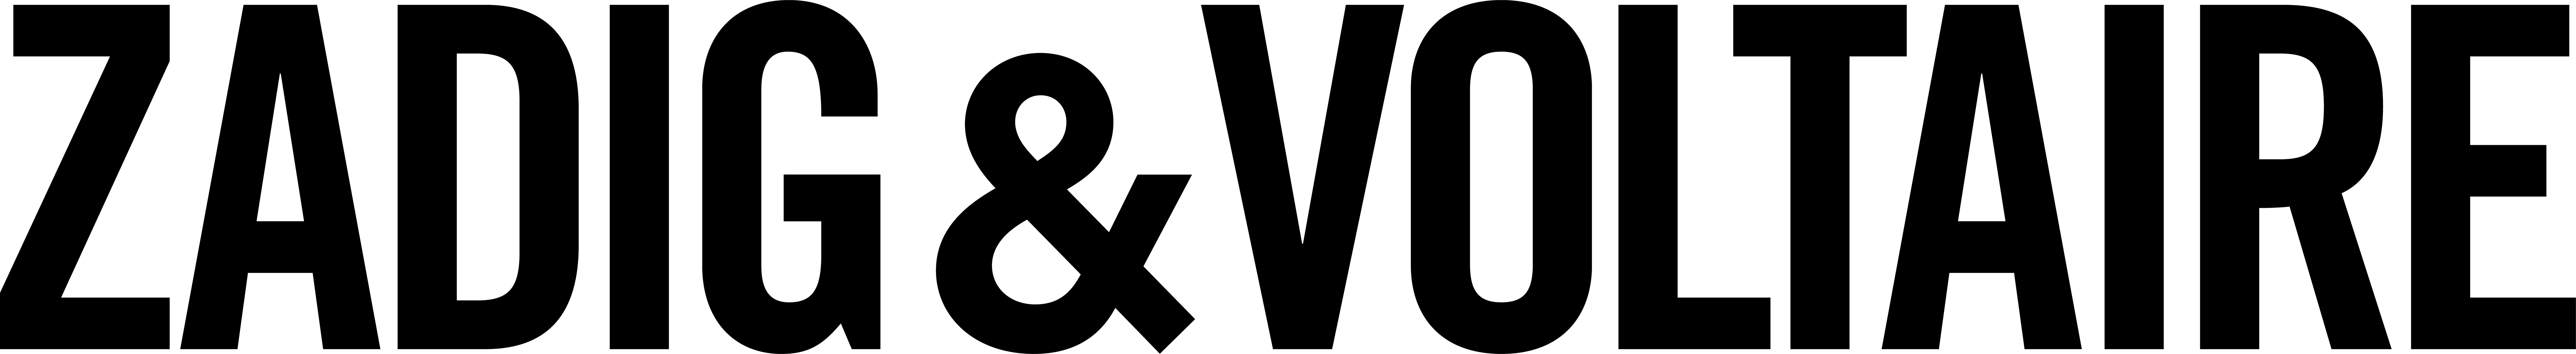 zv-2016_logo_black